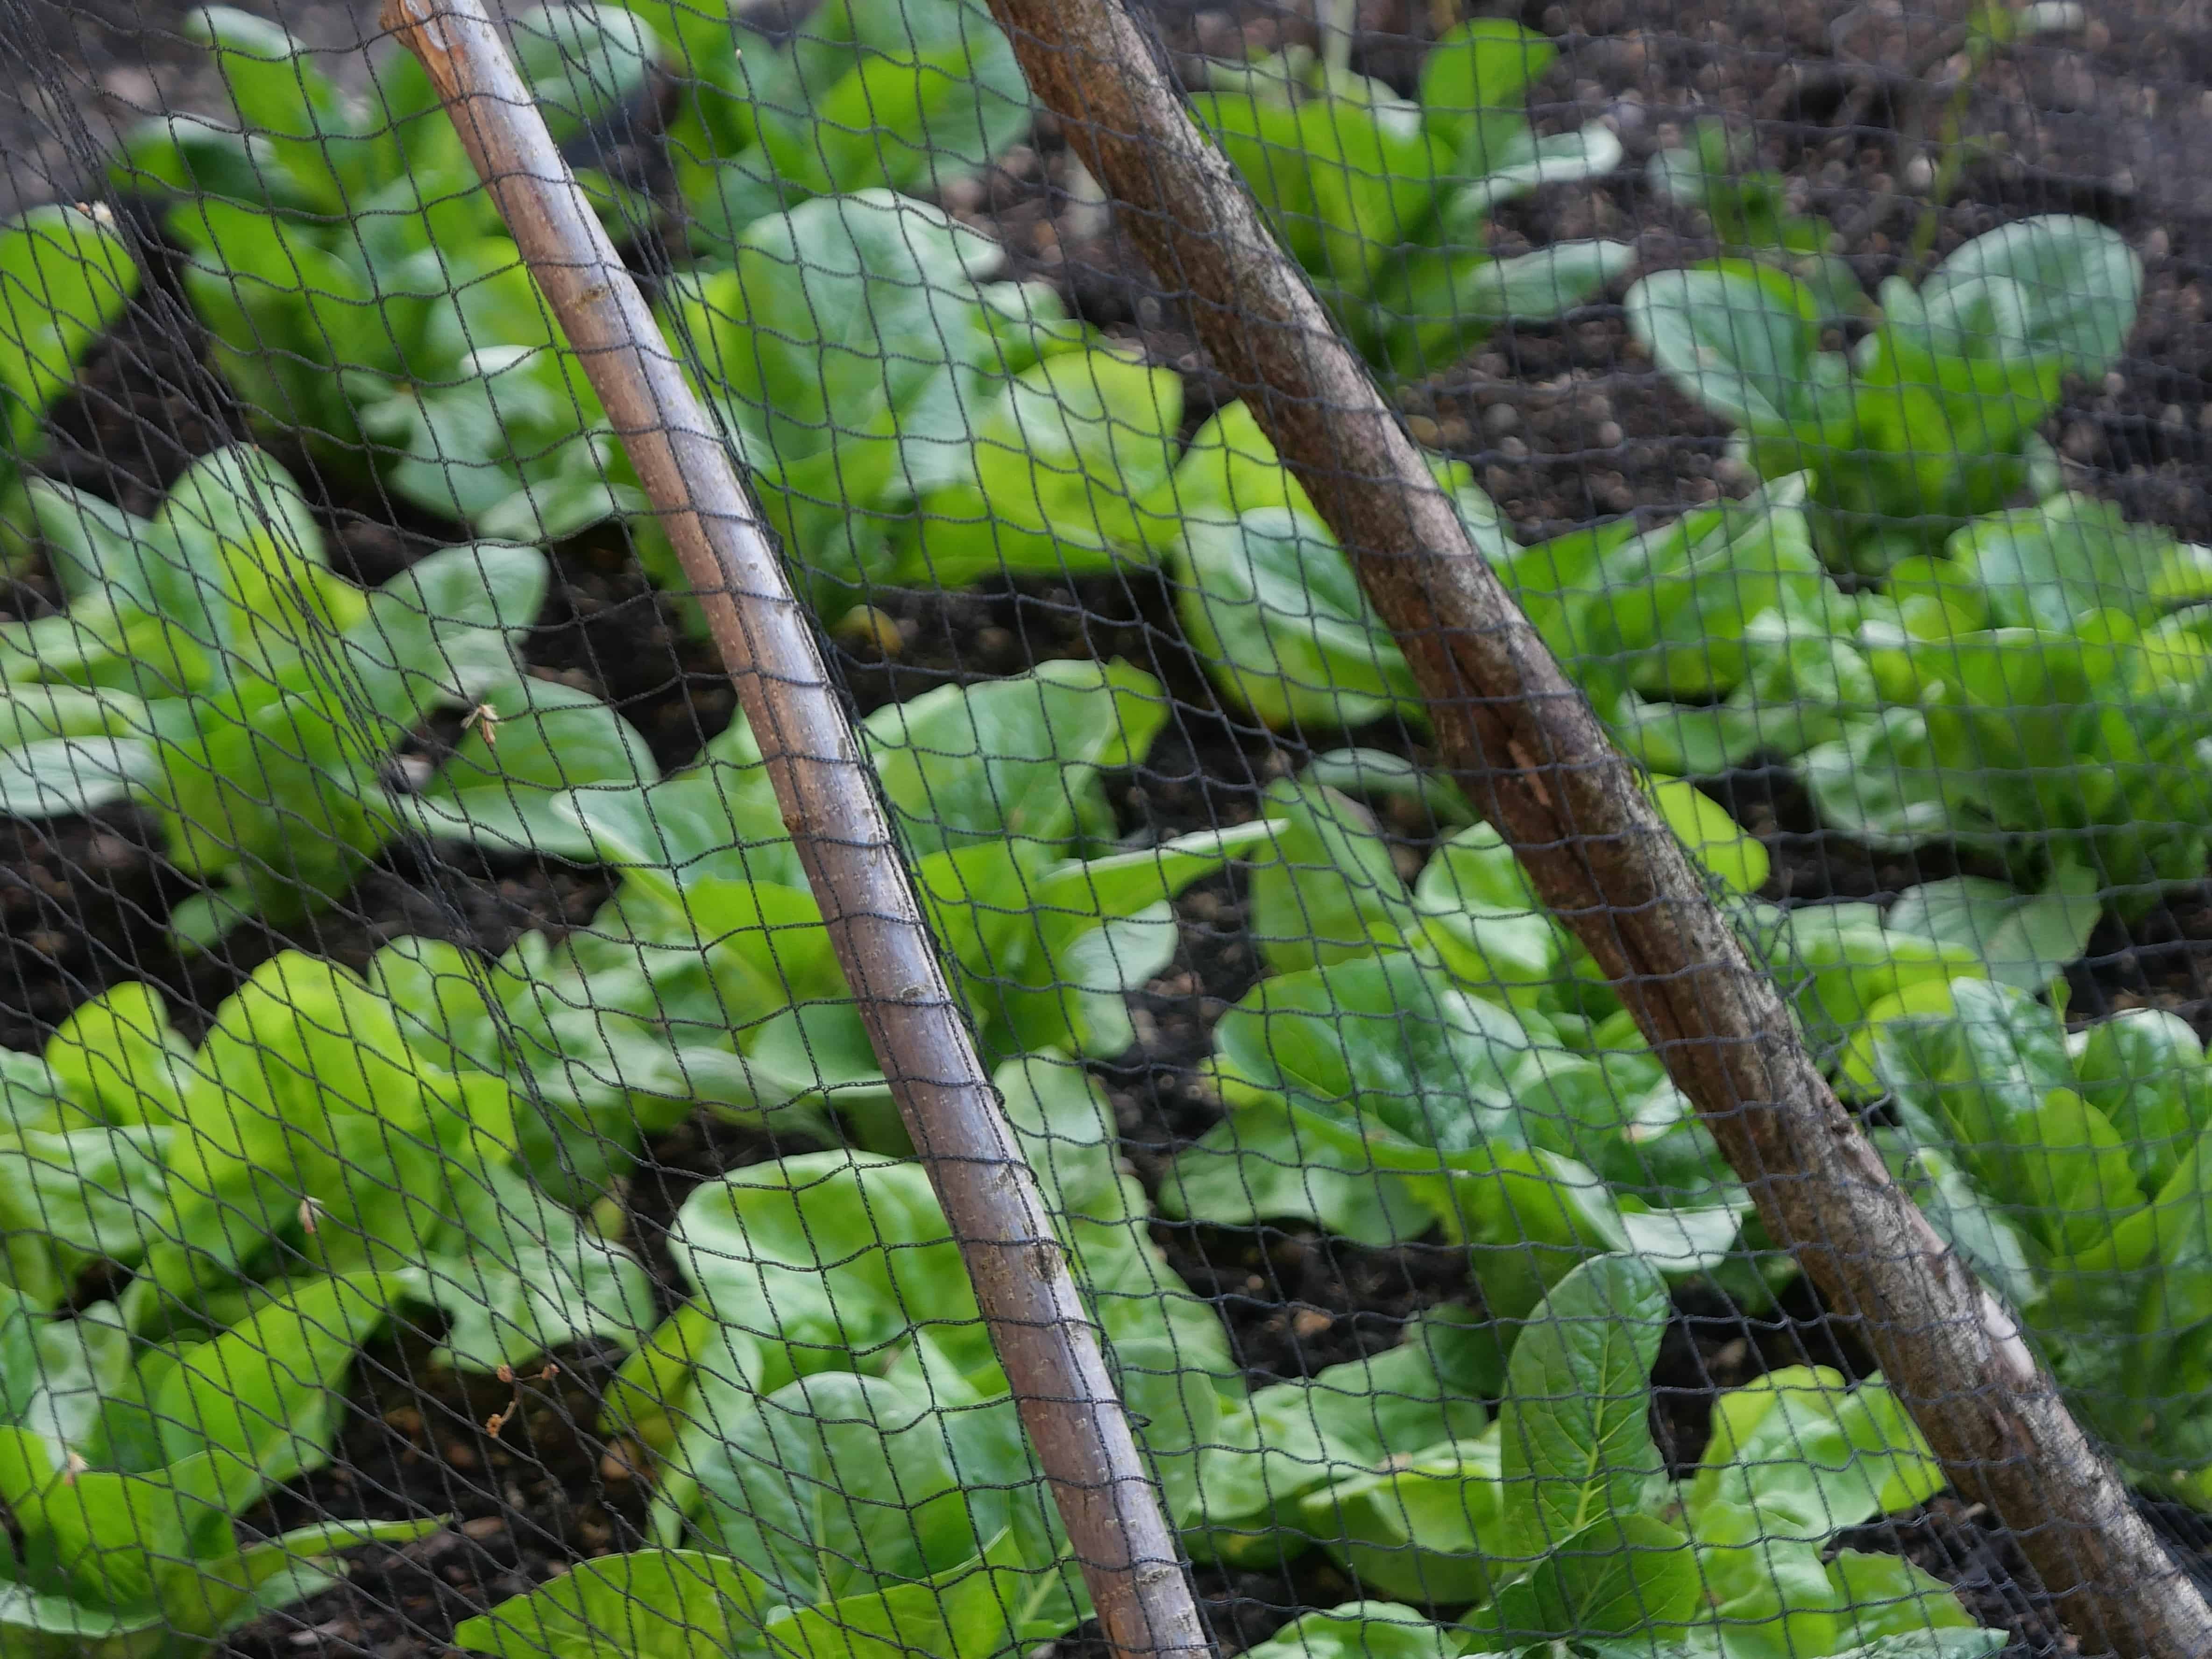 Lush lettuce garden shielded by a black garden net